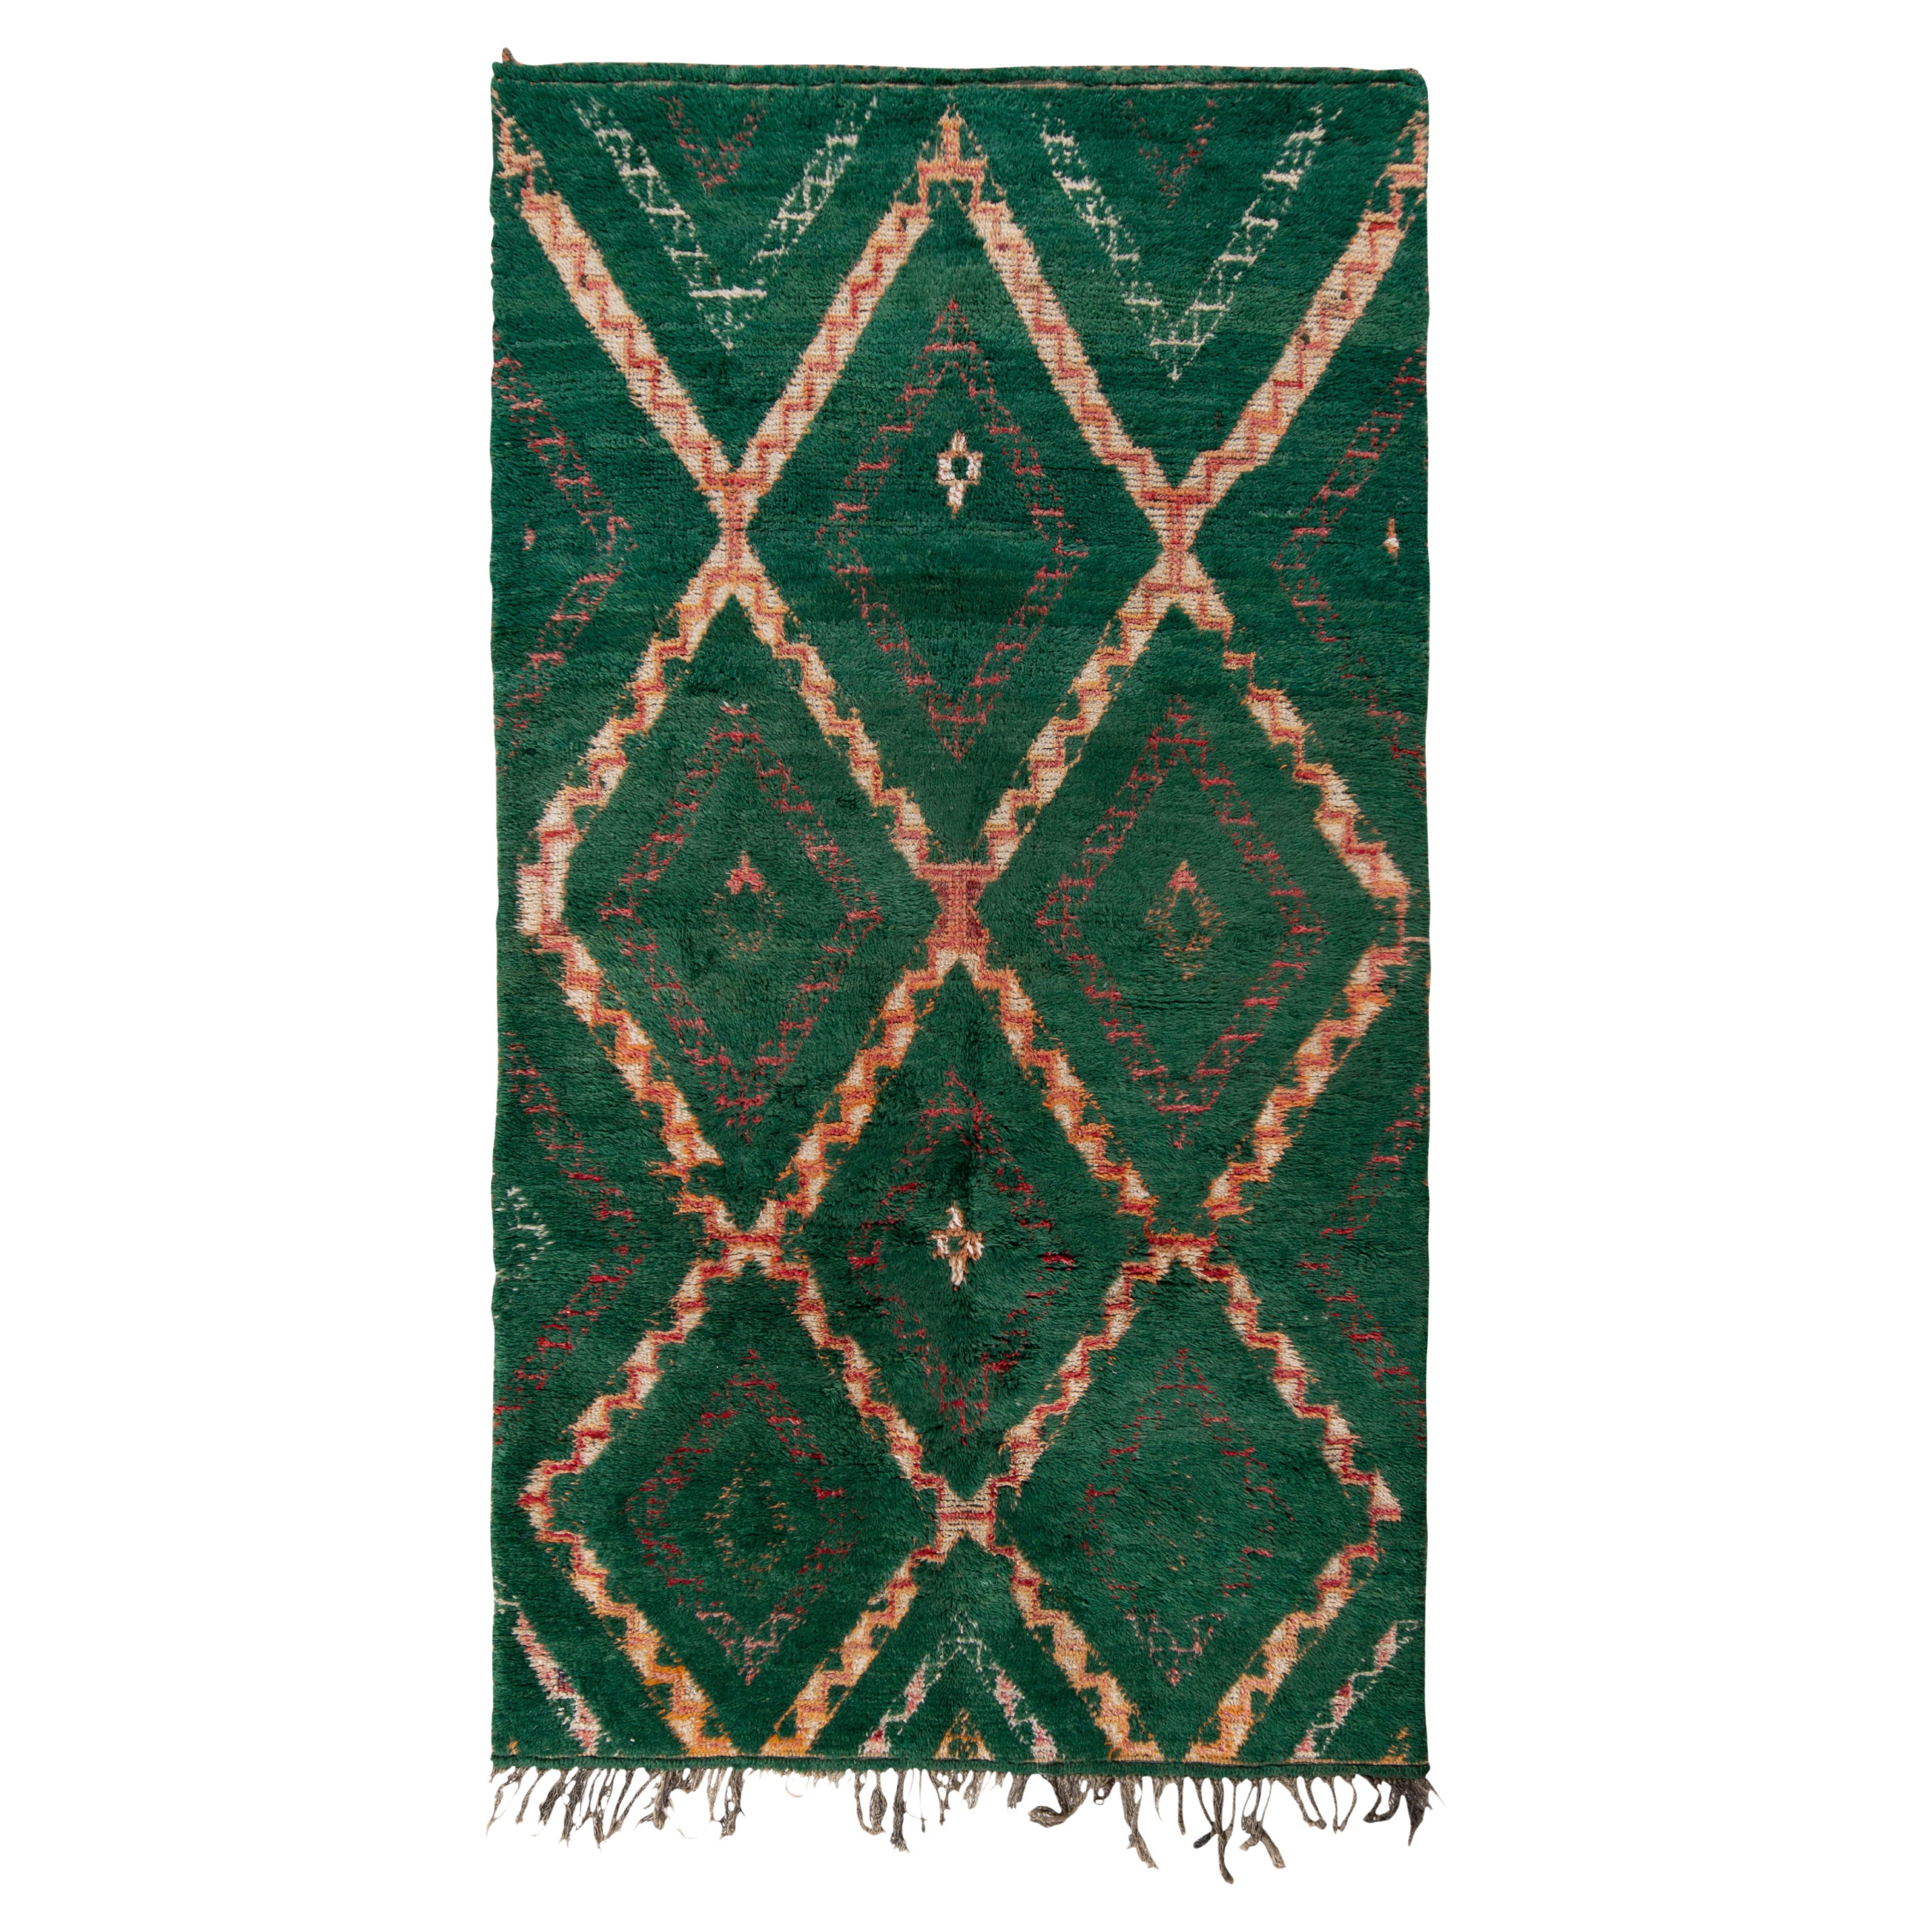 Vintage Berber Moroccan Rug in Green, Orange Geometric Pattern